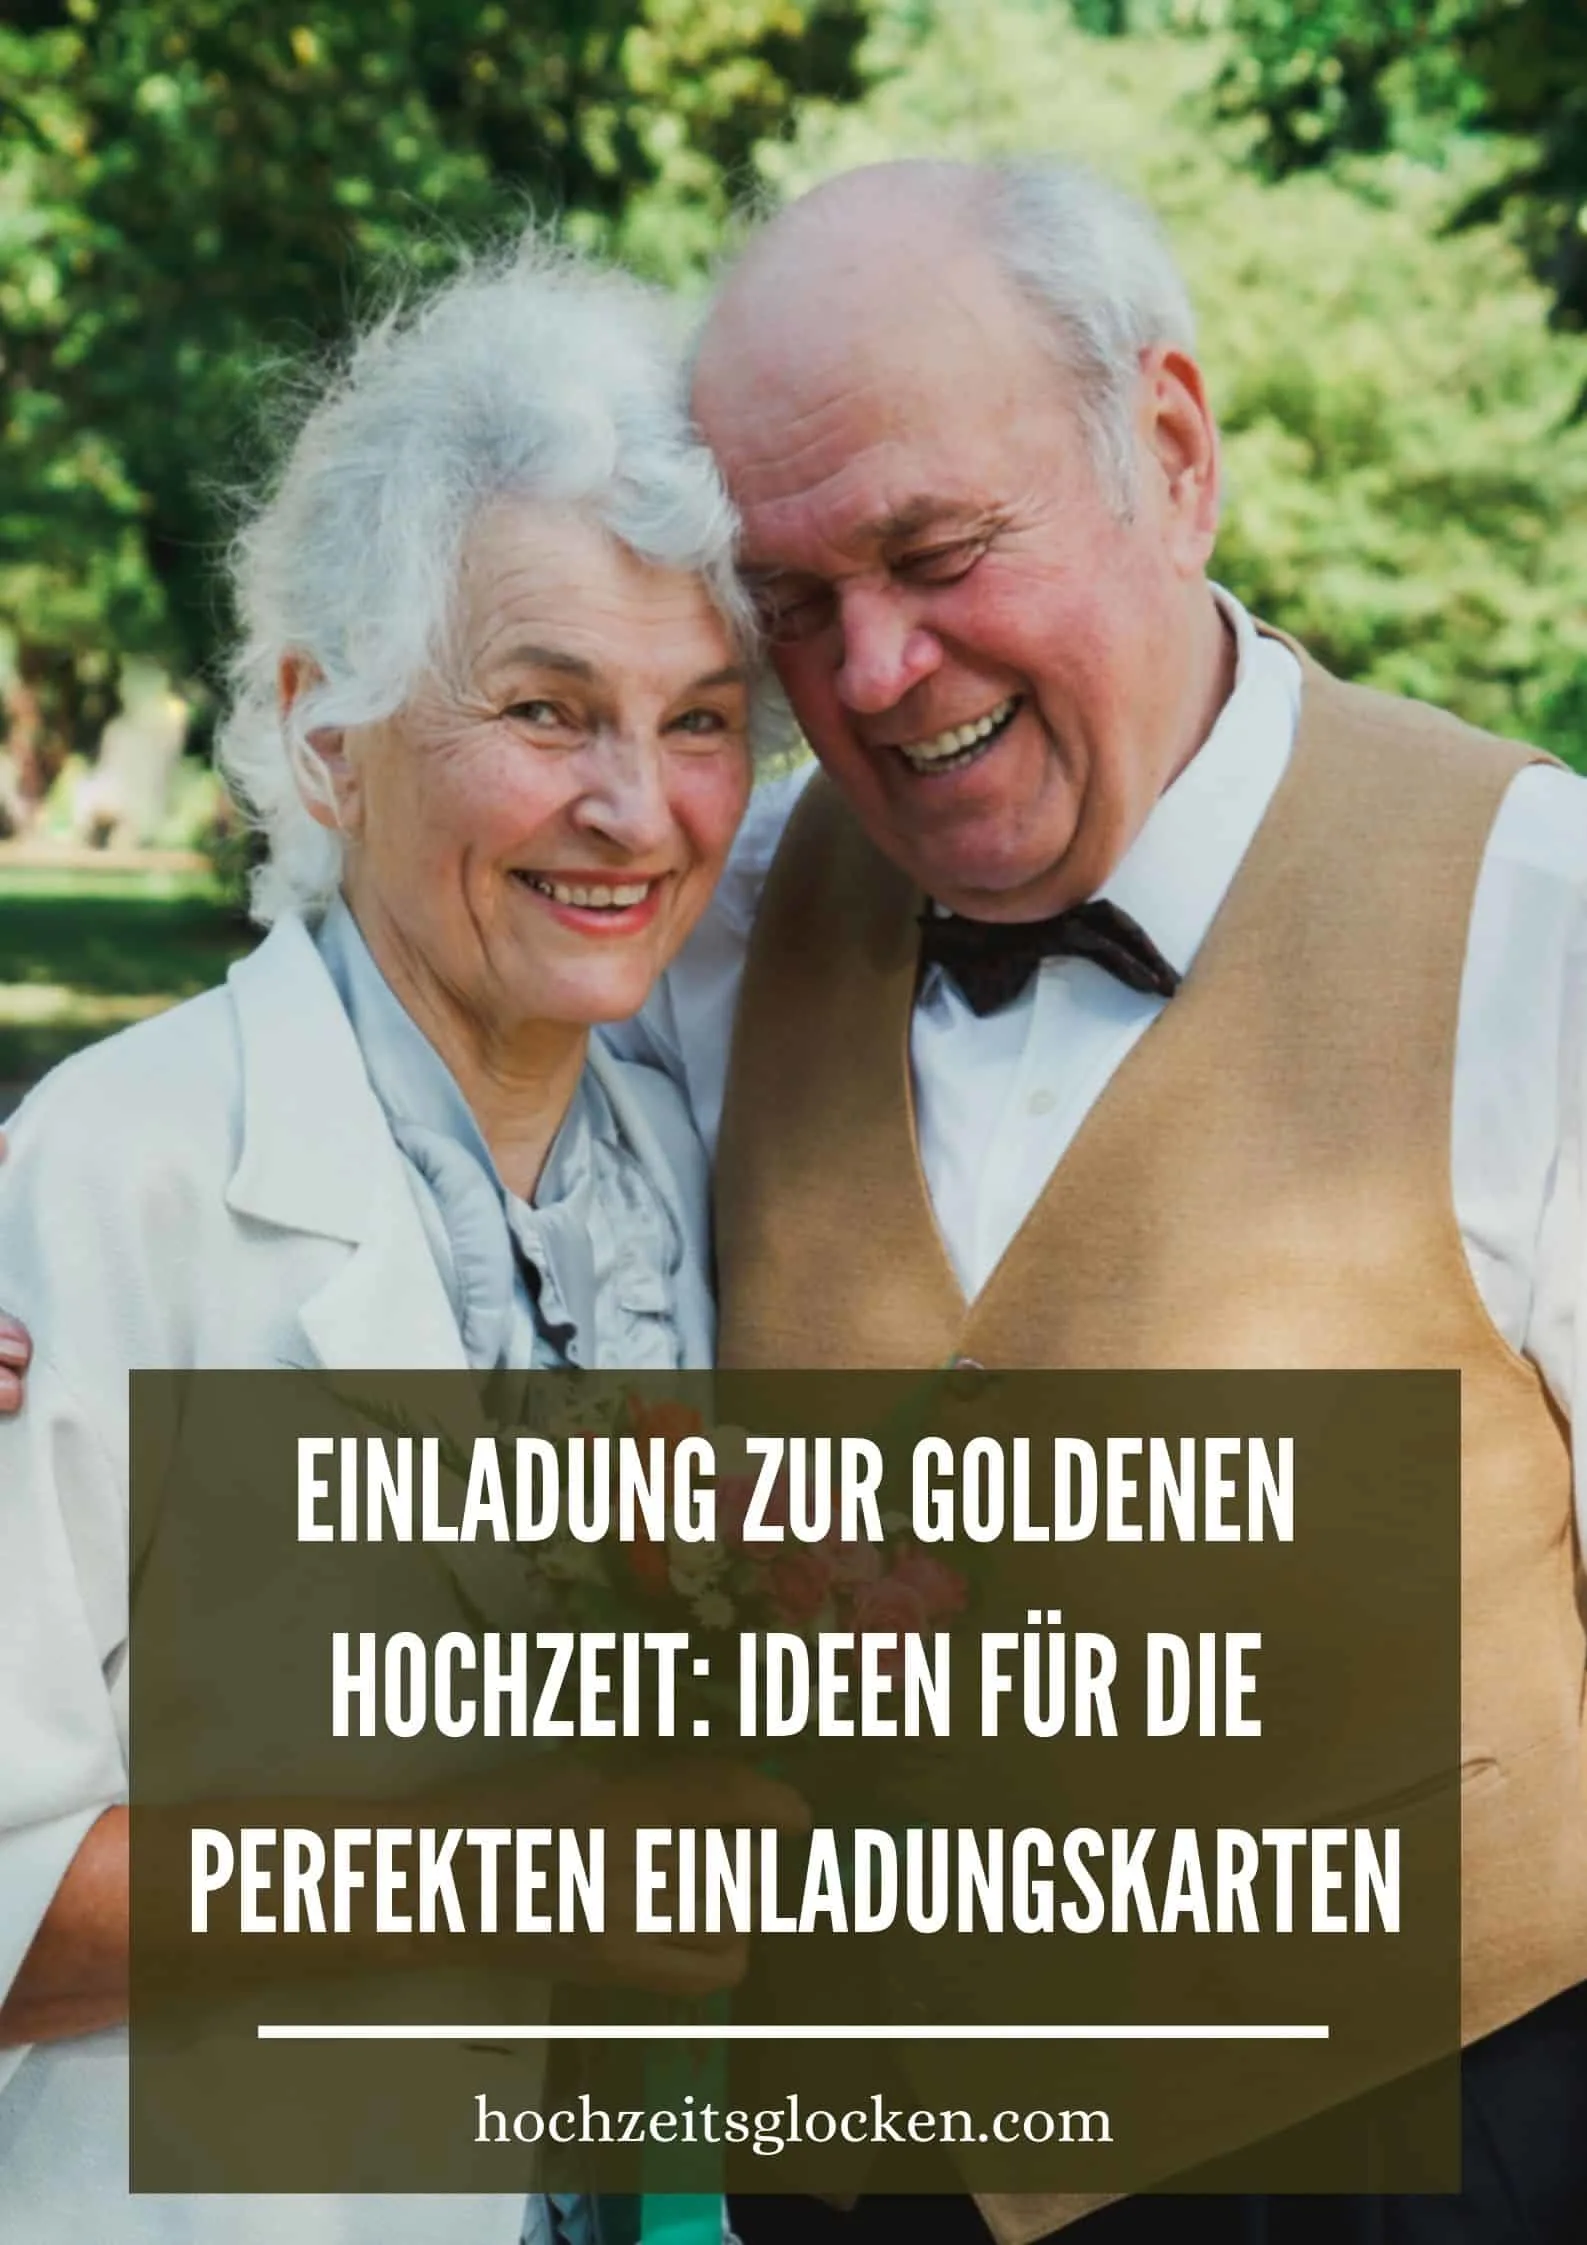 Einladung Zur Goldenen Hochzeit: Ideen Für Die Perfekten Einladungskarten